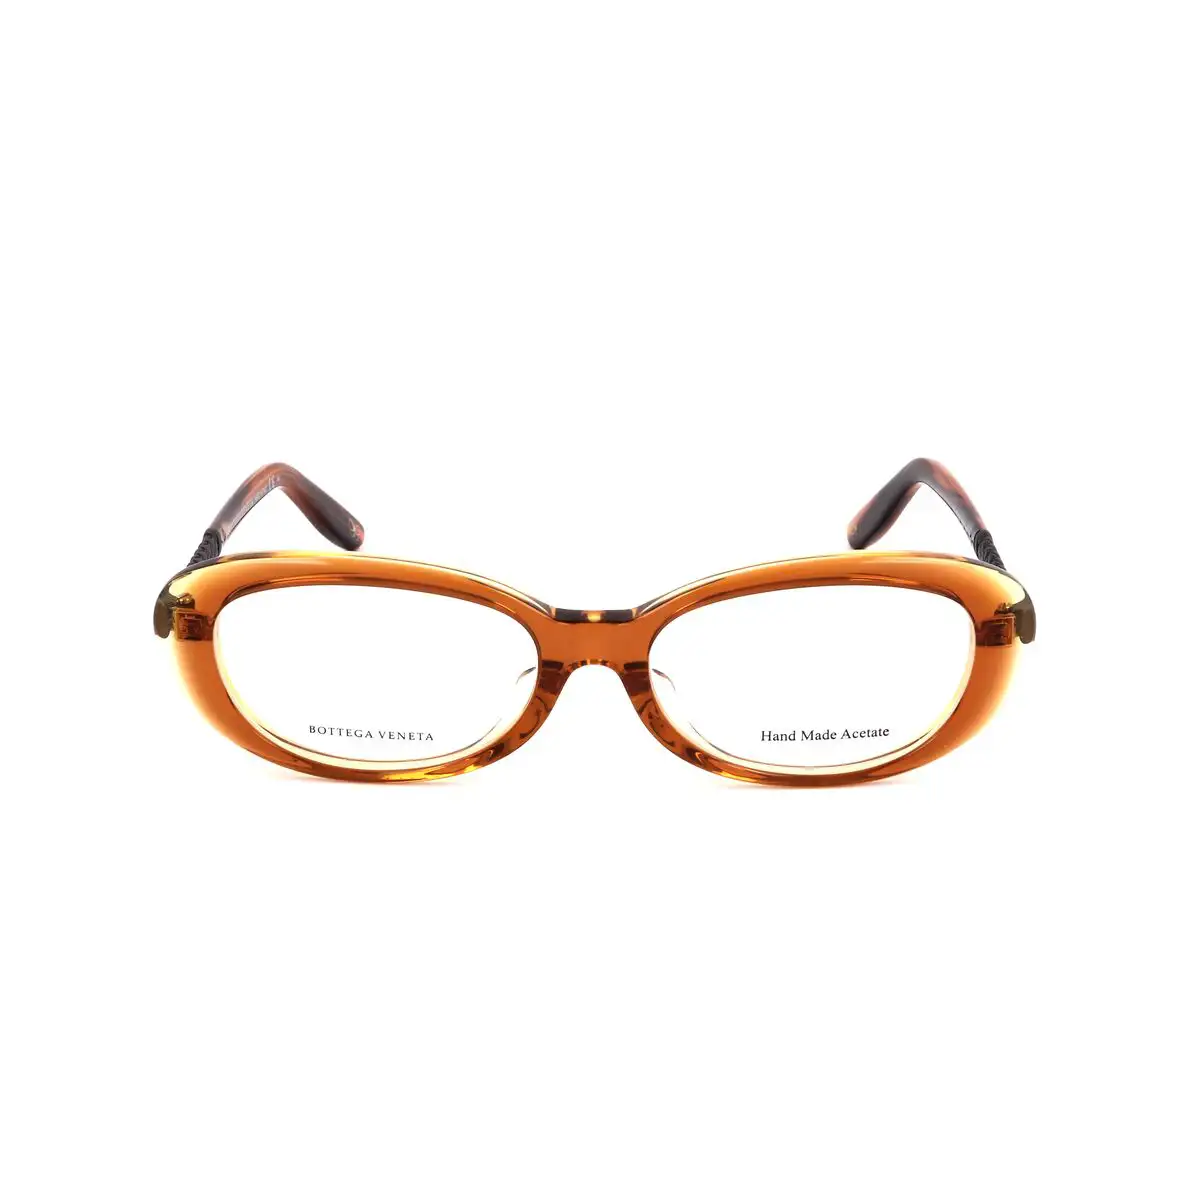 Monture de lunettes femme bottega veneta bv 603 f 4em marron jaune havana_3444. DIAYTAR SENEGAL - Votre Portail Vers l'Exclusivité. Explorez notre boutique en ligne pour trouver des produits uniques et exclusifs, conçus pour les amateurs de qualité.